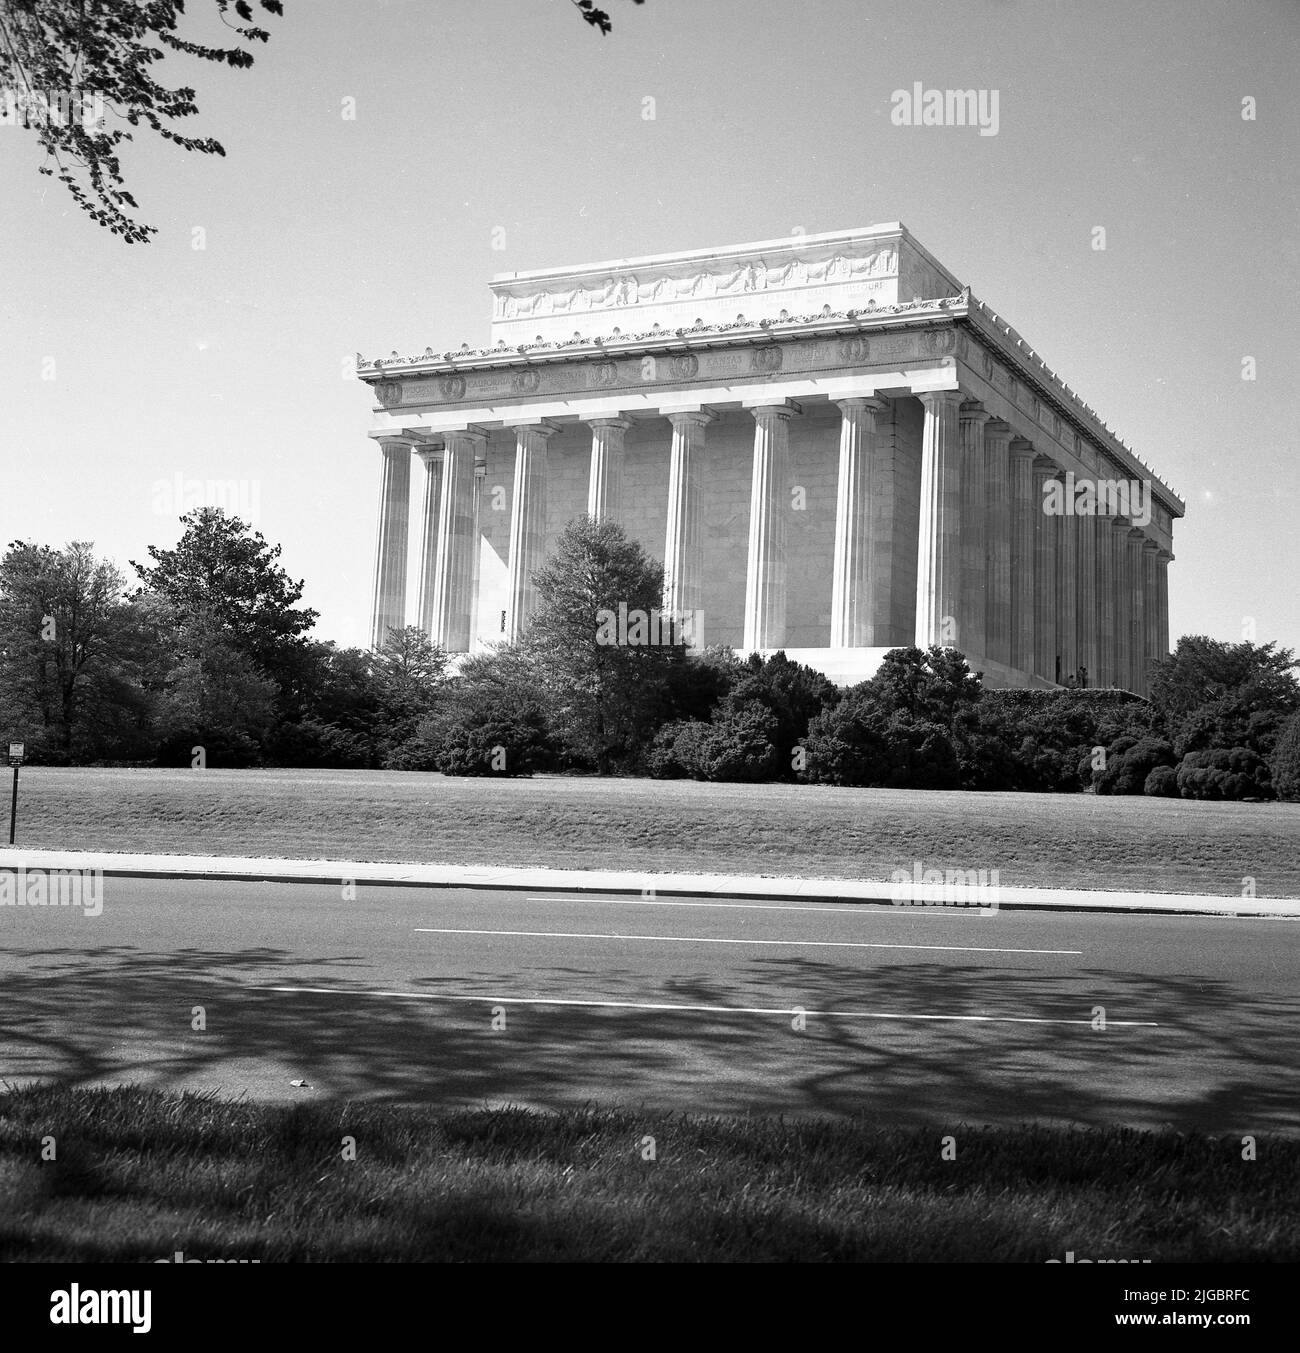 1960s, storico, vista esterna da questa era del Lincoln Memorial, un tempio neoclassico a Washington, DC, USA, un monumento nazionale al presidente degli Stati Uniti del 16th, Abraham Lincoln. Inaugurato nel 1922, l'architetto dell'edificio di ispirazione Partenone era Henry Bacon. Foto Stock